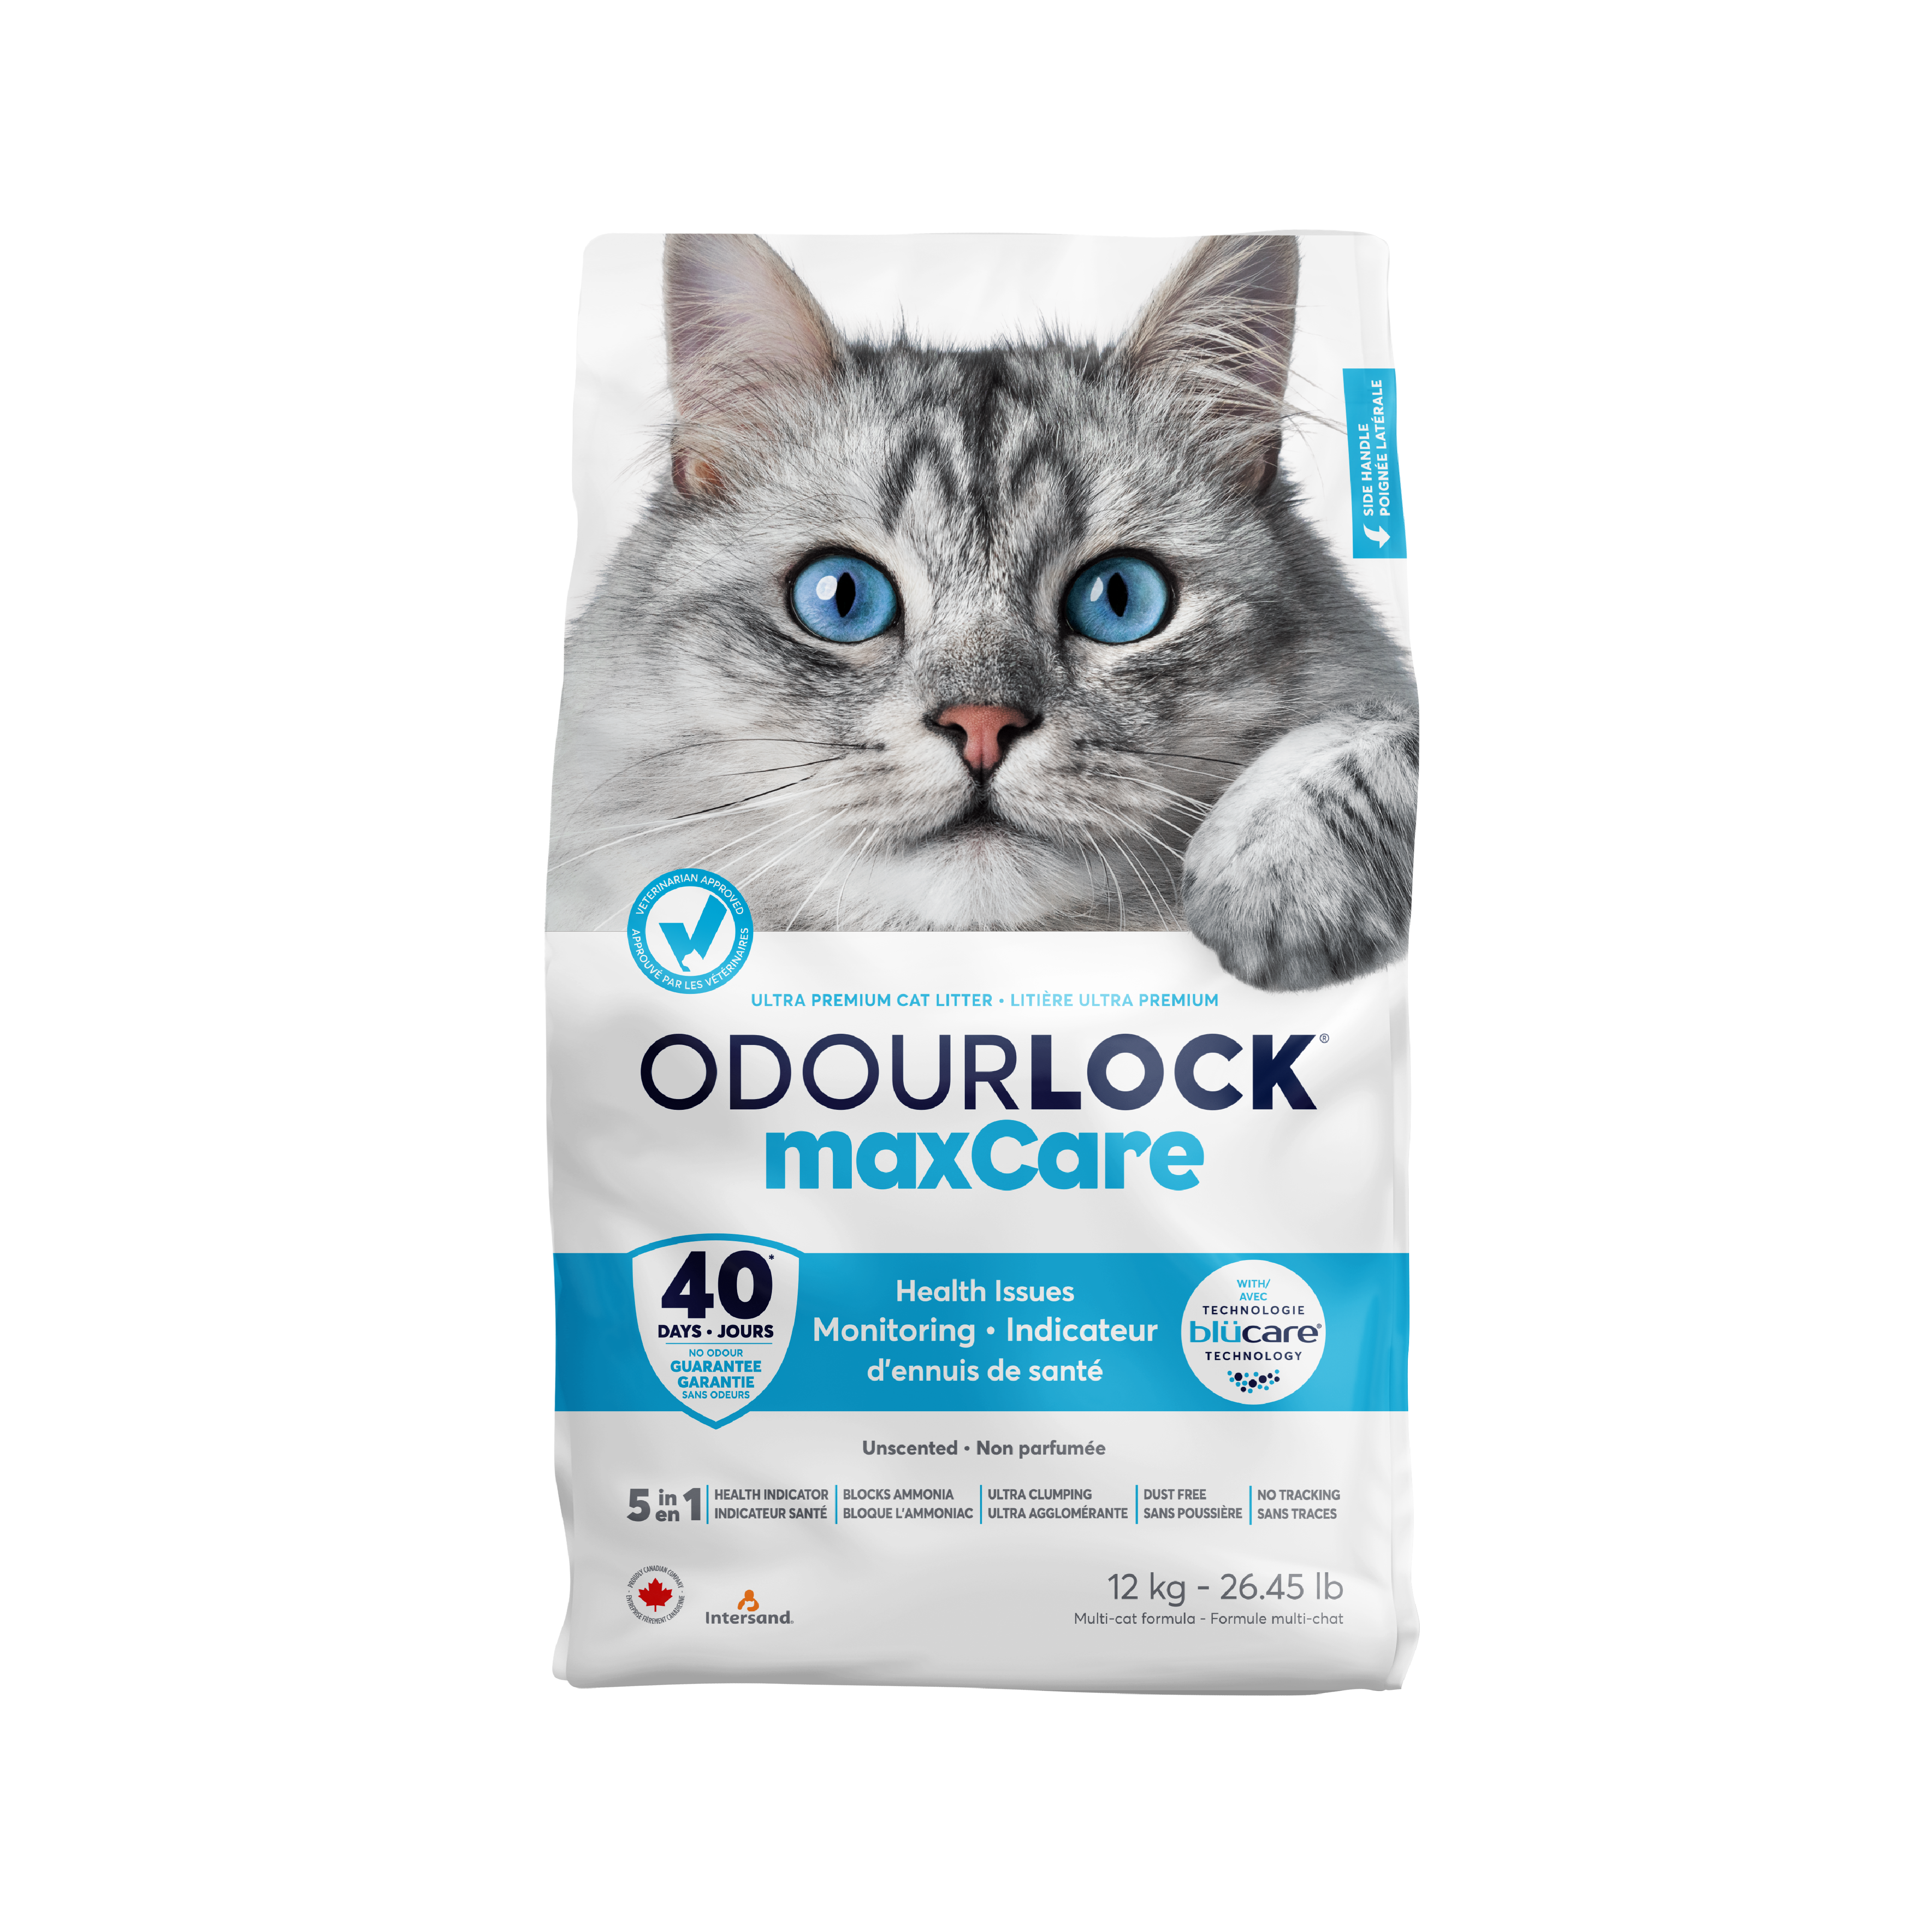 odourlock_product3-01